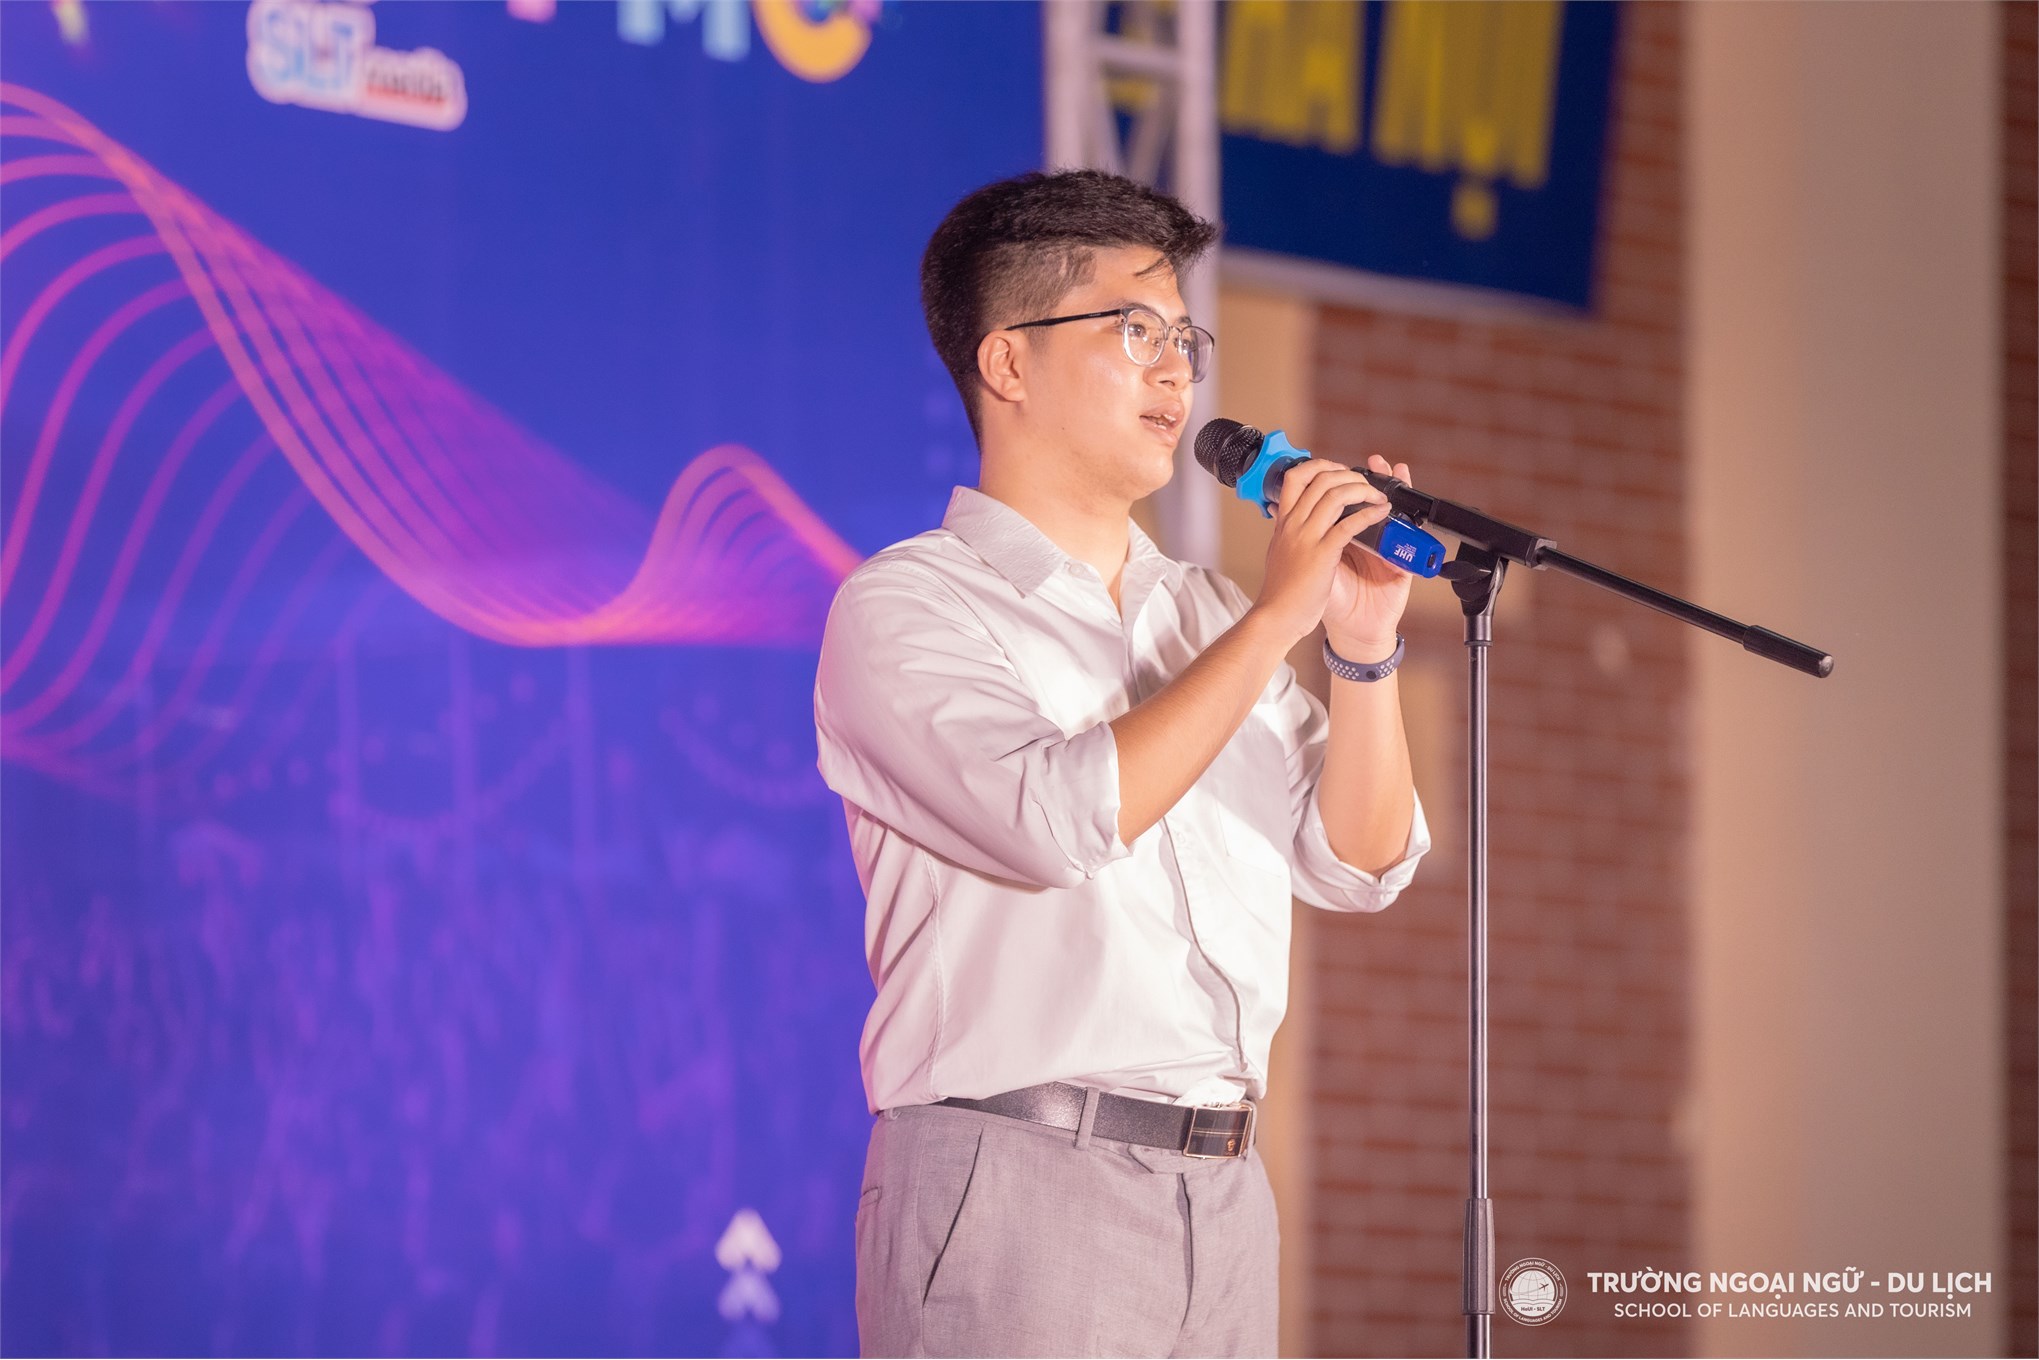 Đồng chí Ngô Lê Xuân Đức - Ủy viên Ban Thường vụ Đoàn Thanh niên, Chủ tịch Hội Sinh viên Trường Đại học Công nghiệp Hà Nội phát biểu tại chương trình